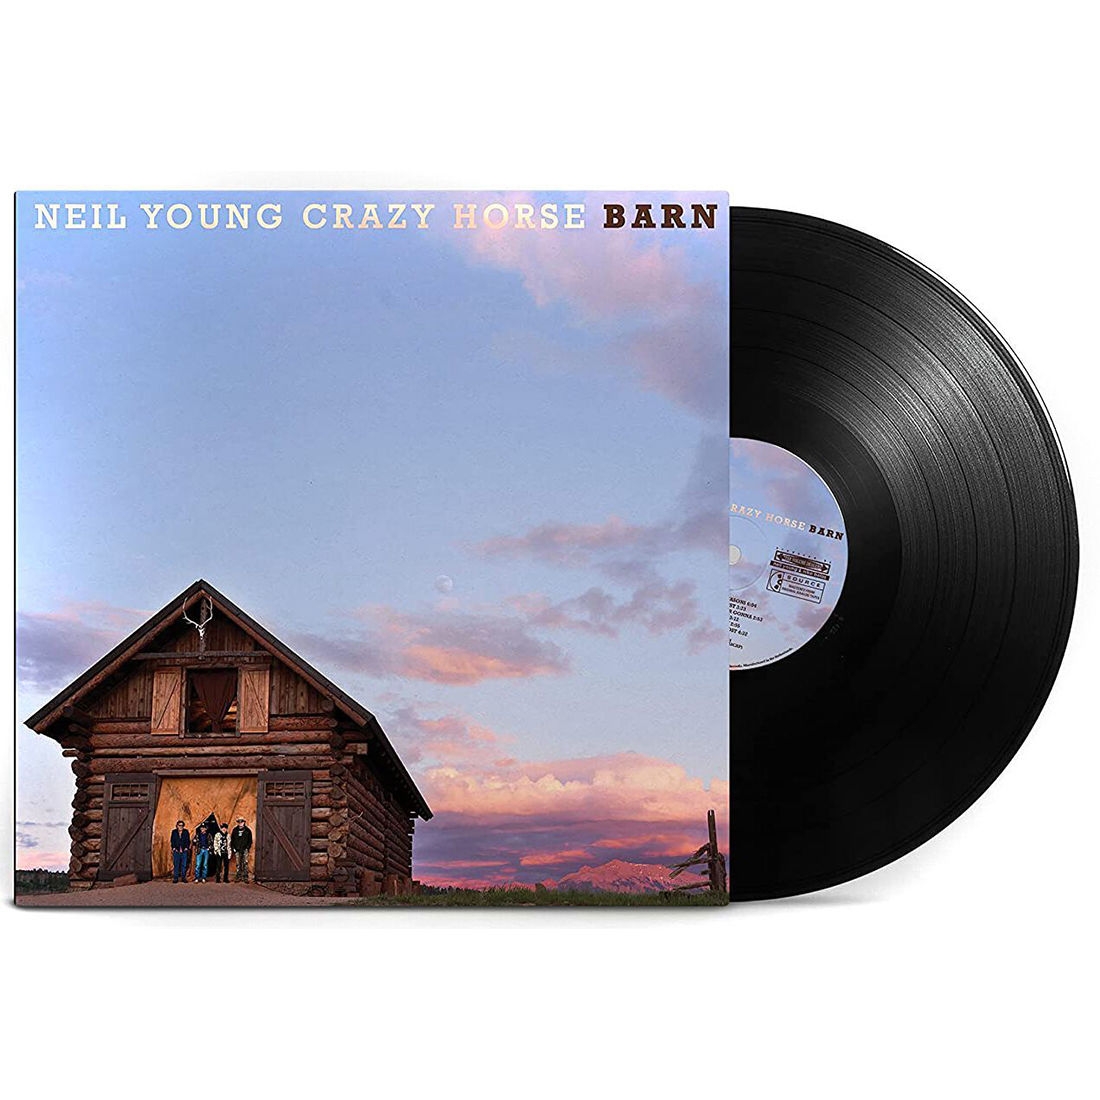 Виниловая Пластинка Young, Neil / Crazy Horse Barn (0093624878445) виниловая пластинка neil young crazy horse barn 1 lp black vinyl